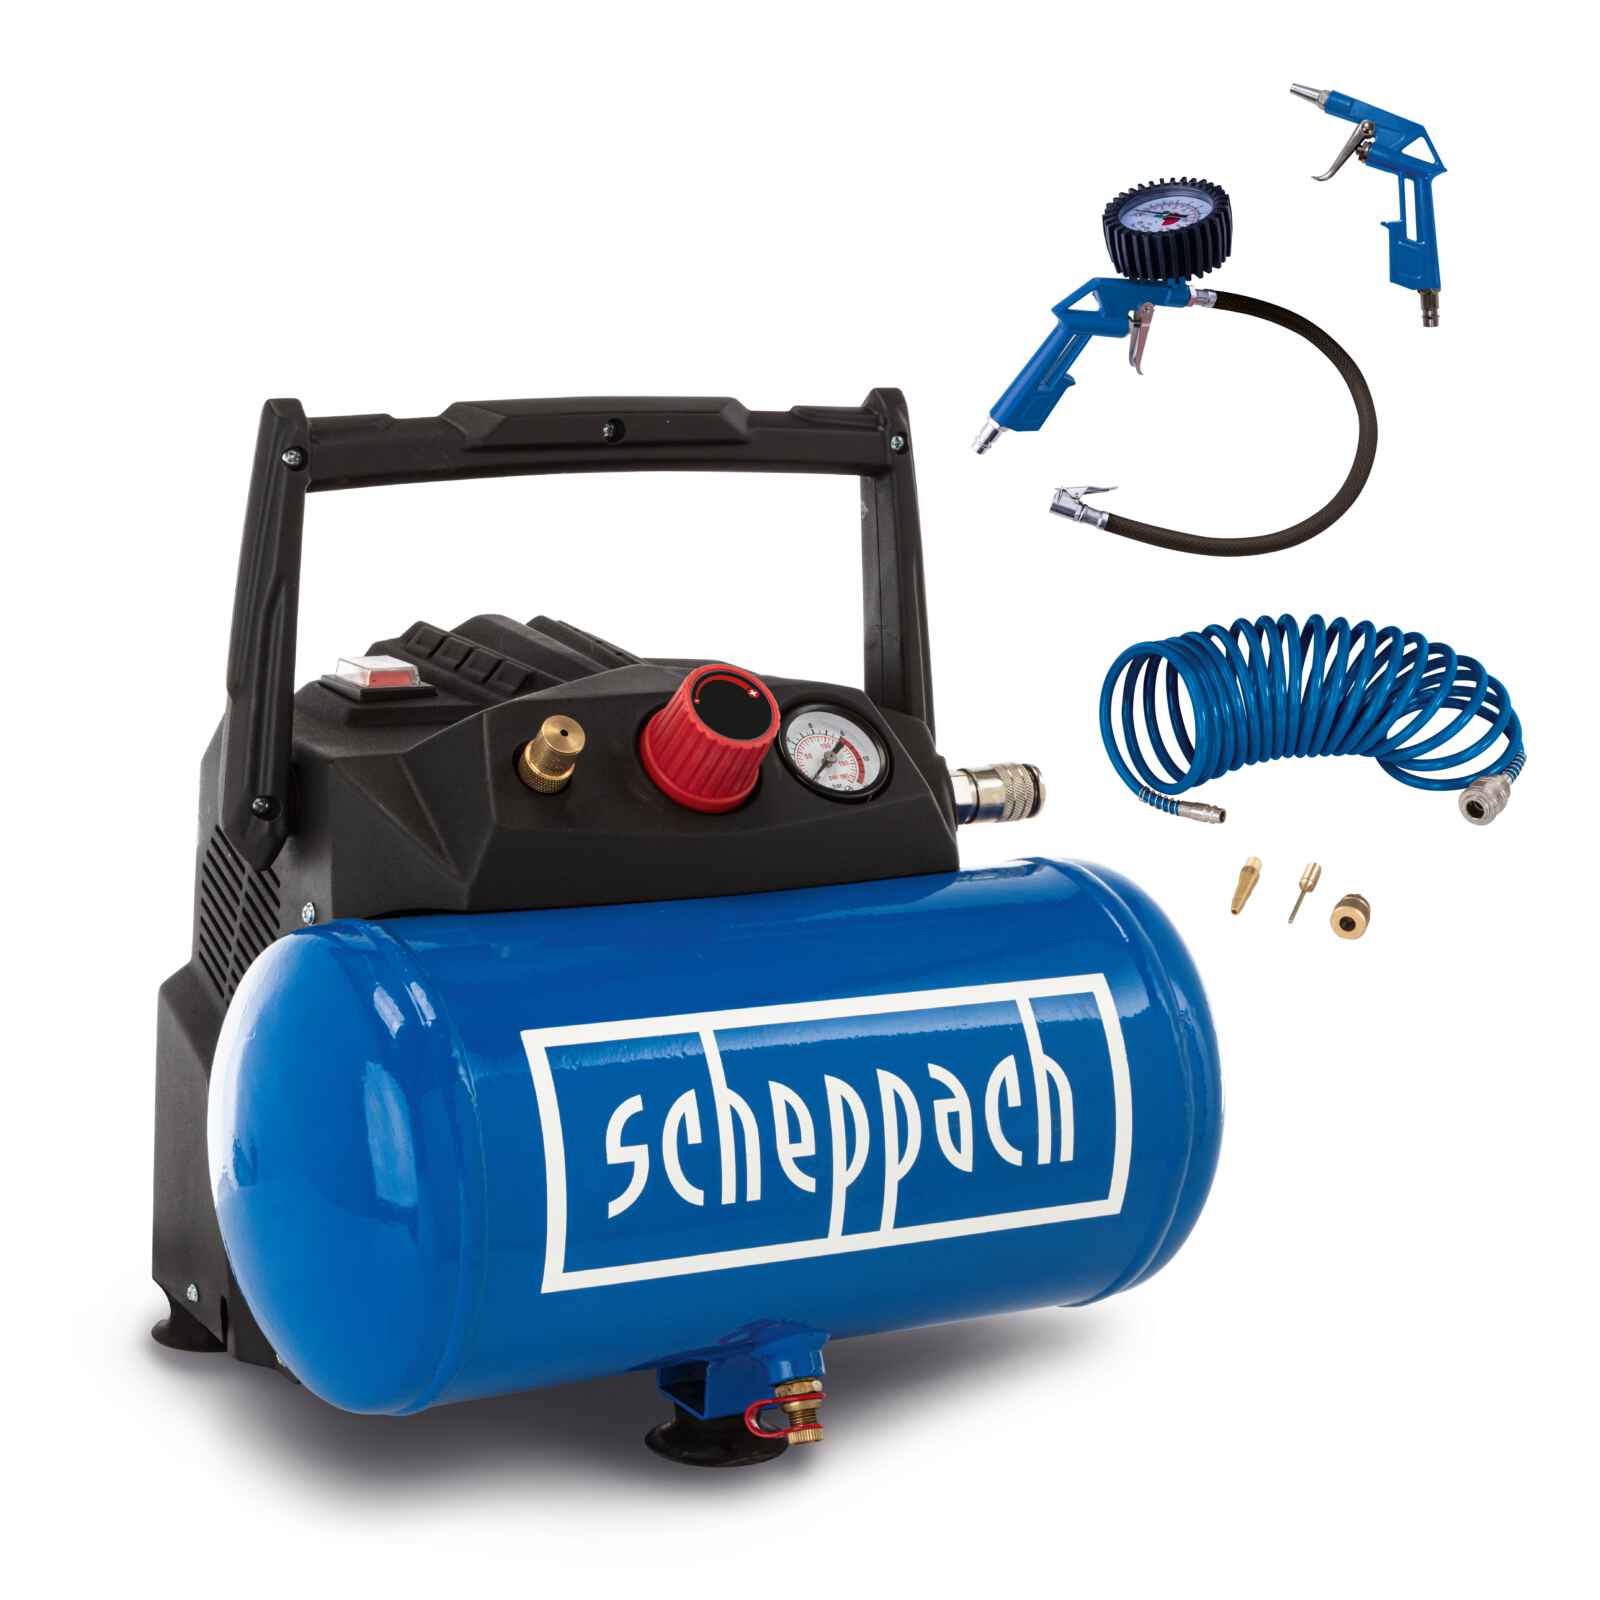 Benzin Hochdruckreiniger HCP2600 Scheppach - 4,4PS, Benzinmotor 173cm³